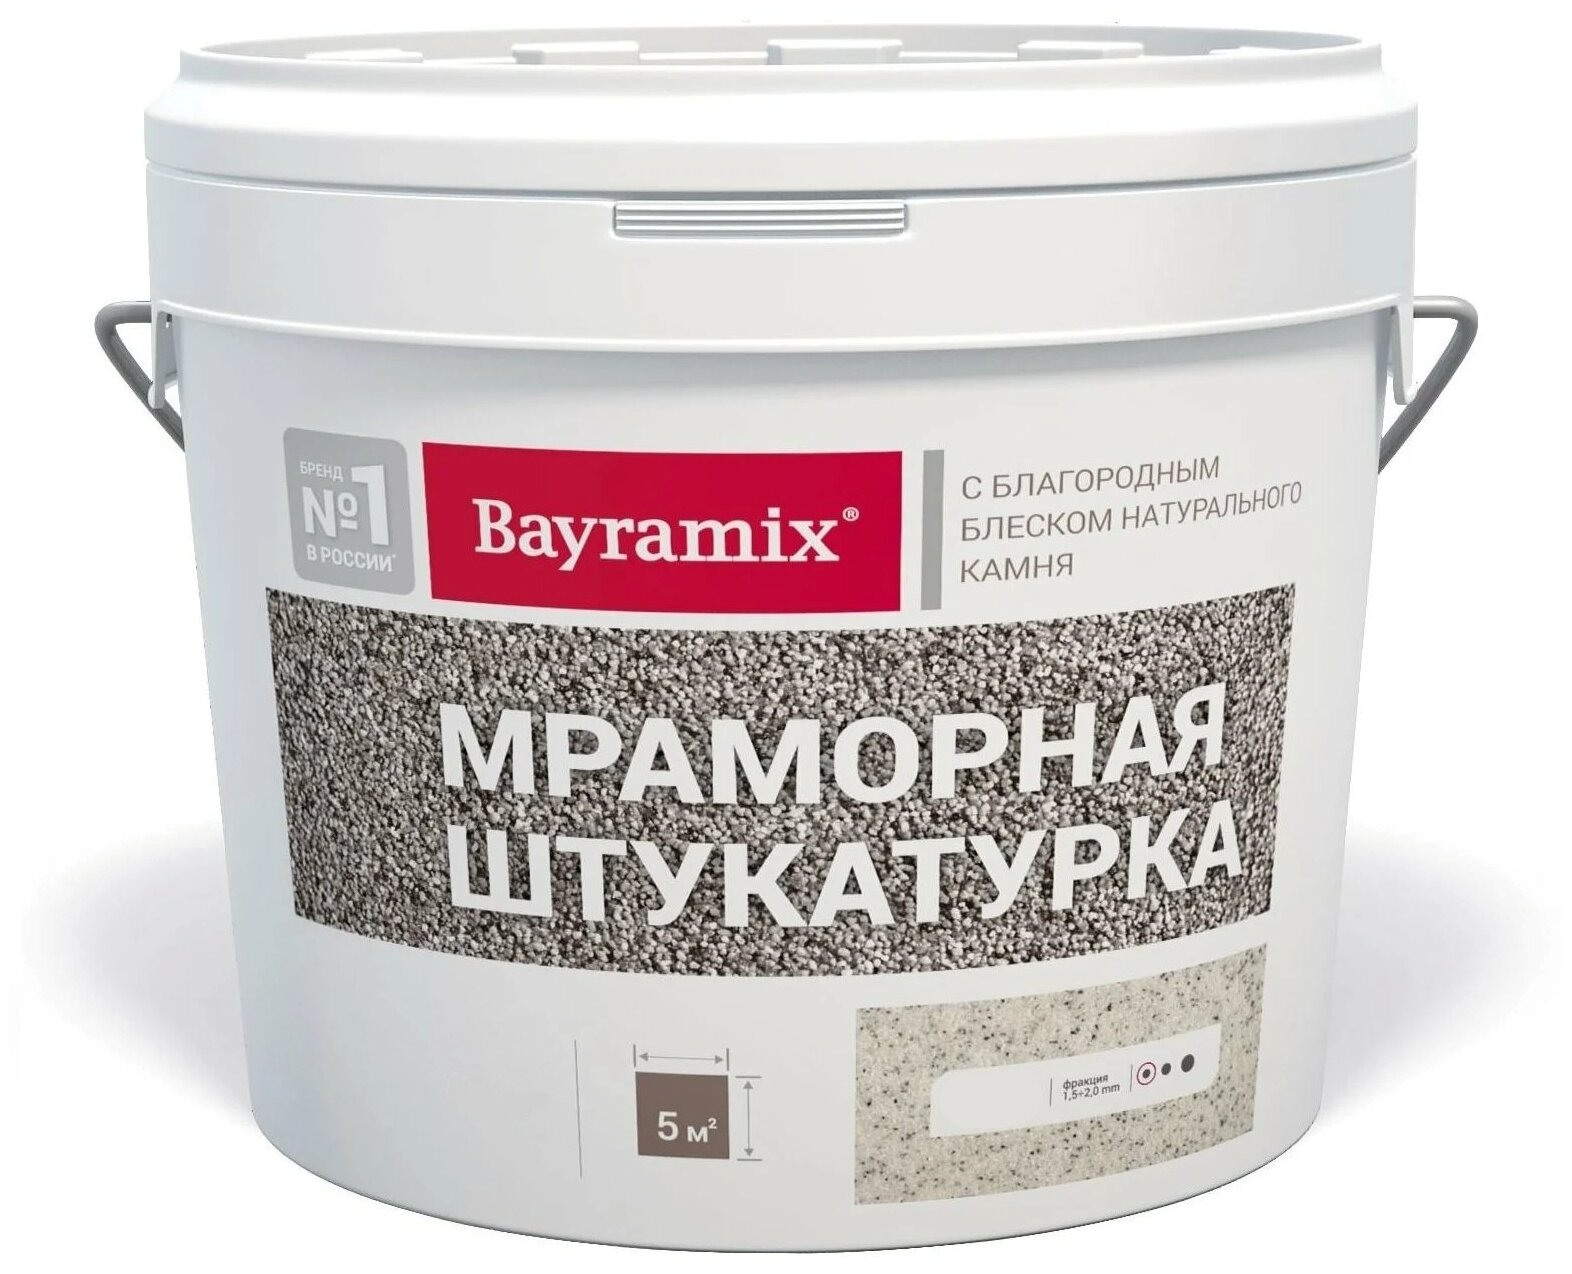 Декоративное покрытие Bayramix Мраморная штукатурка K с блеском натурального камня, 1.5 мм, magnolia white, 15 кг